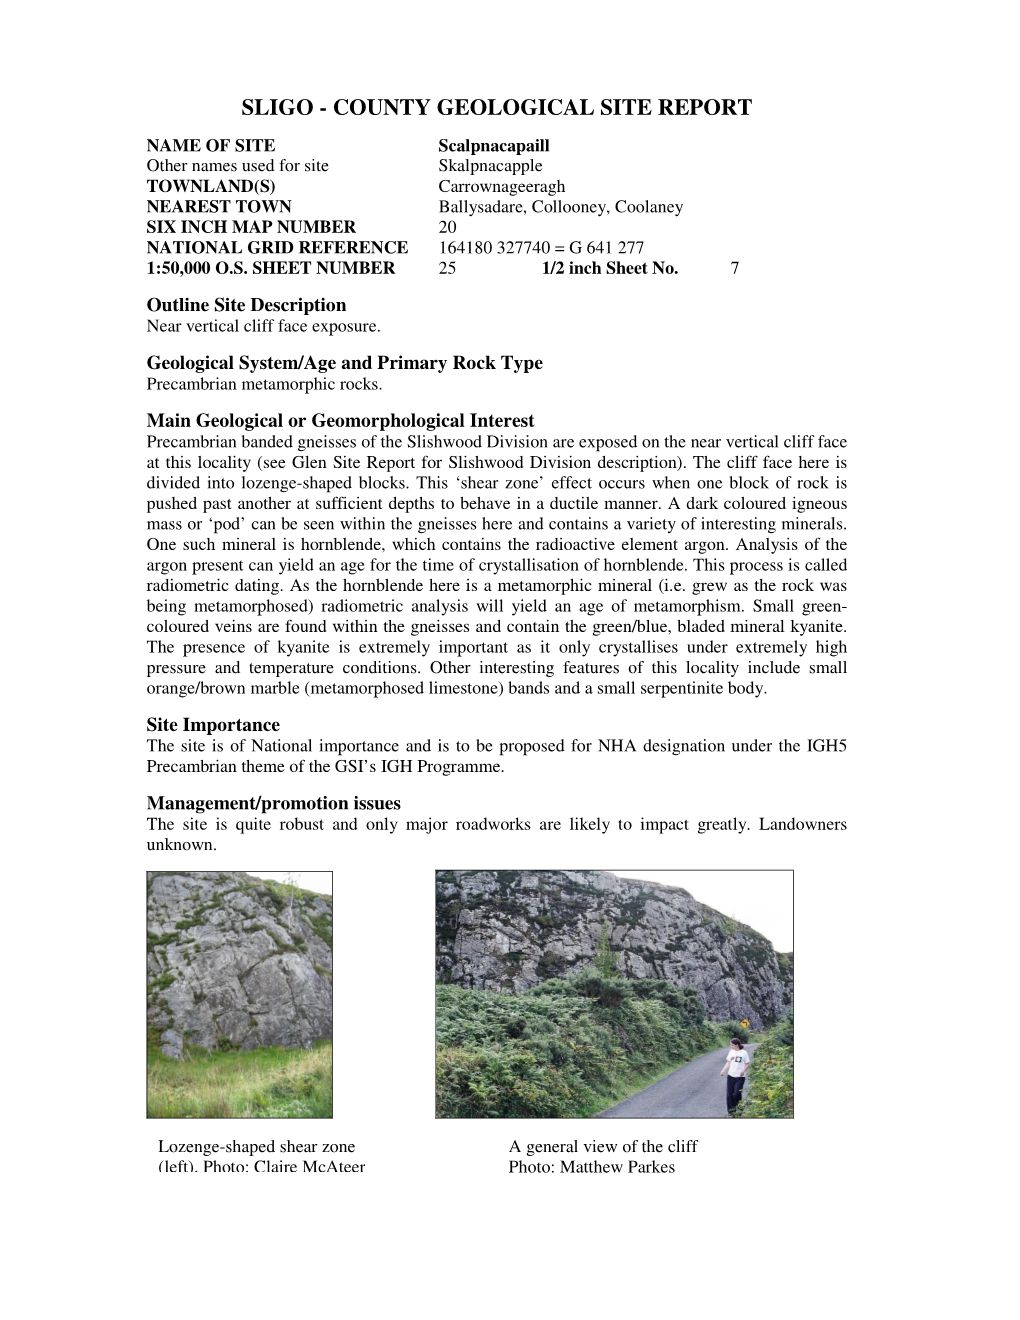 Sligo - County Geological Site Report